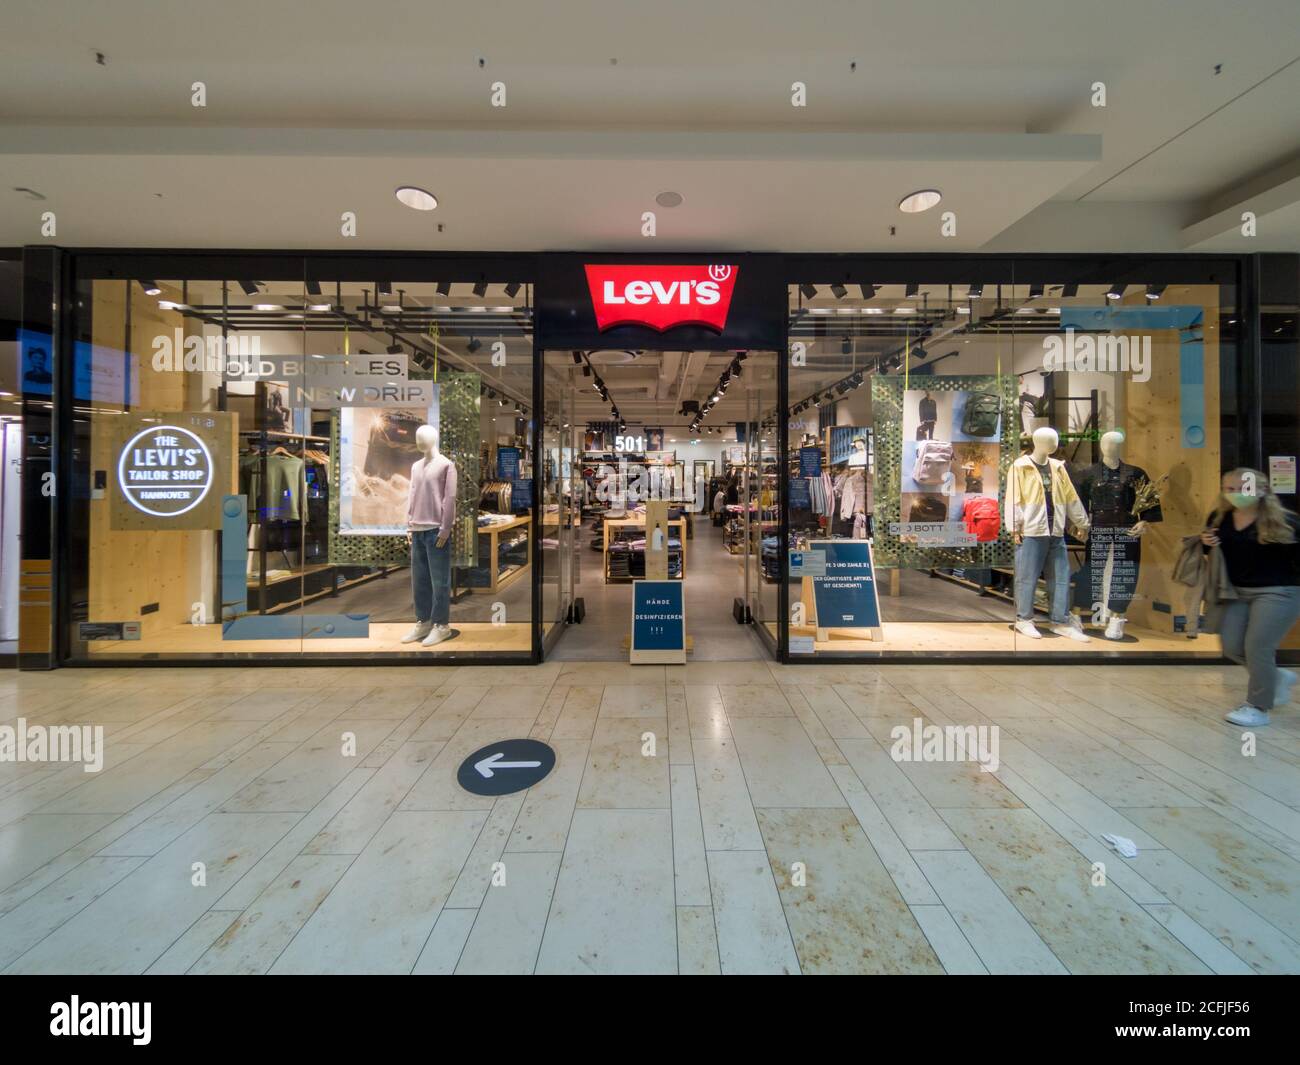 LEVI'S Shop Store Front in Mall in Hannover, Deutschland, 31.8.2020 Levis  ist eine berühmte Mode amerikanische Marke von lässigen Jeans und Hosen  Stockfotografie - Alamy